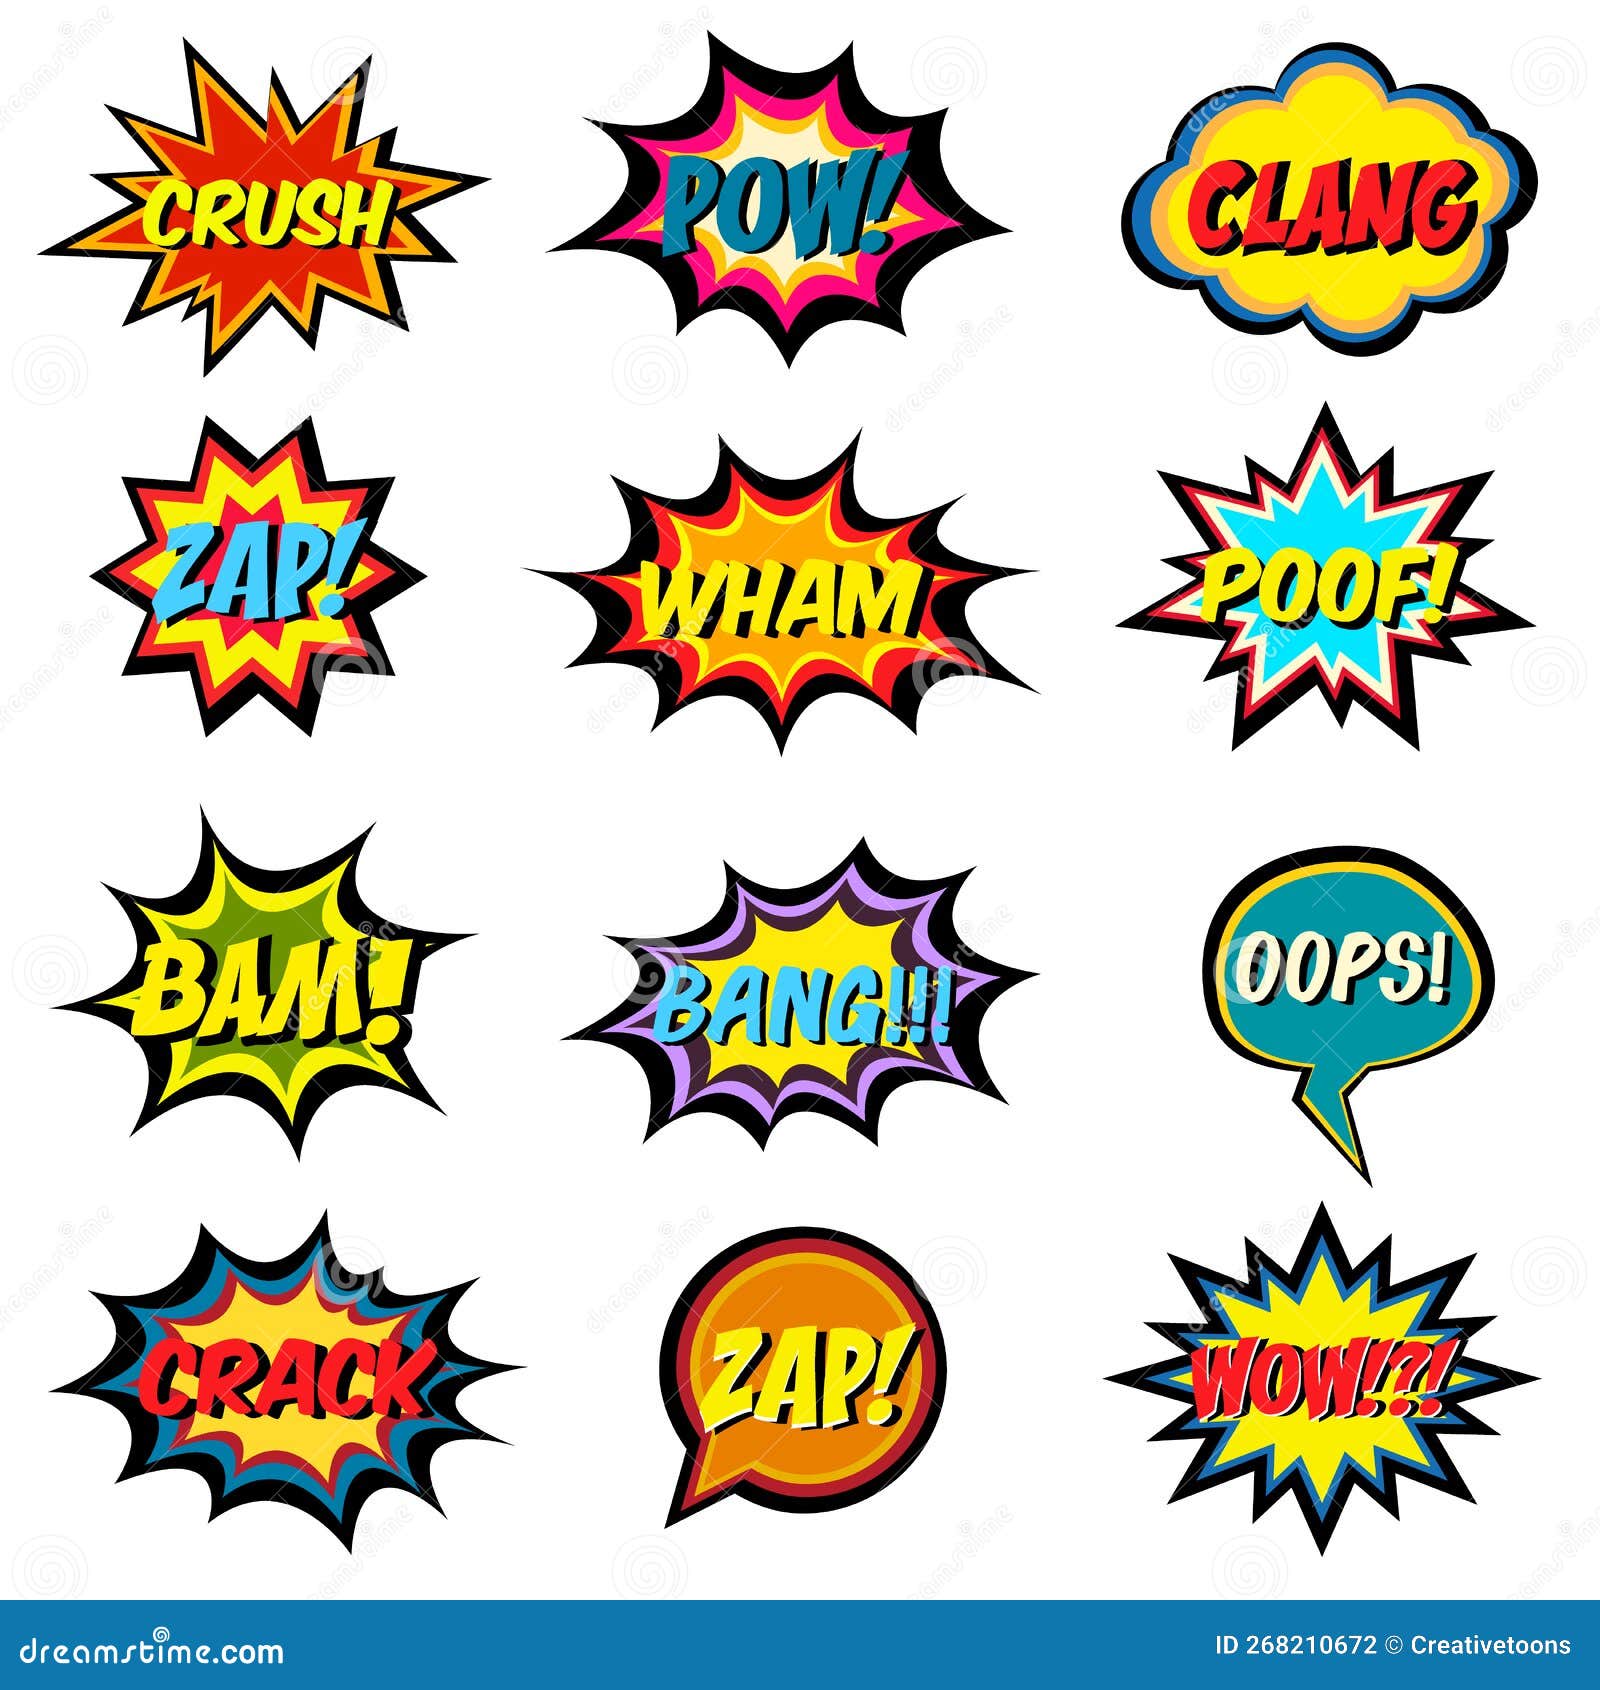 Quiz bolha de fala em quadrinhos no estilo pop art discurso em quadrinhos  janela de diálogo bandeira amarela para venda